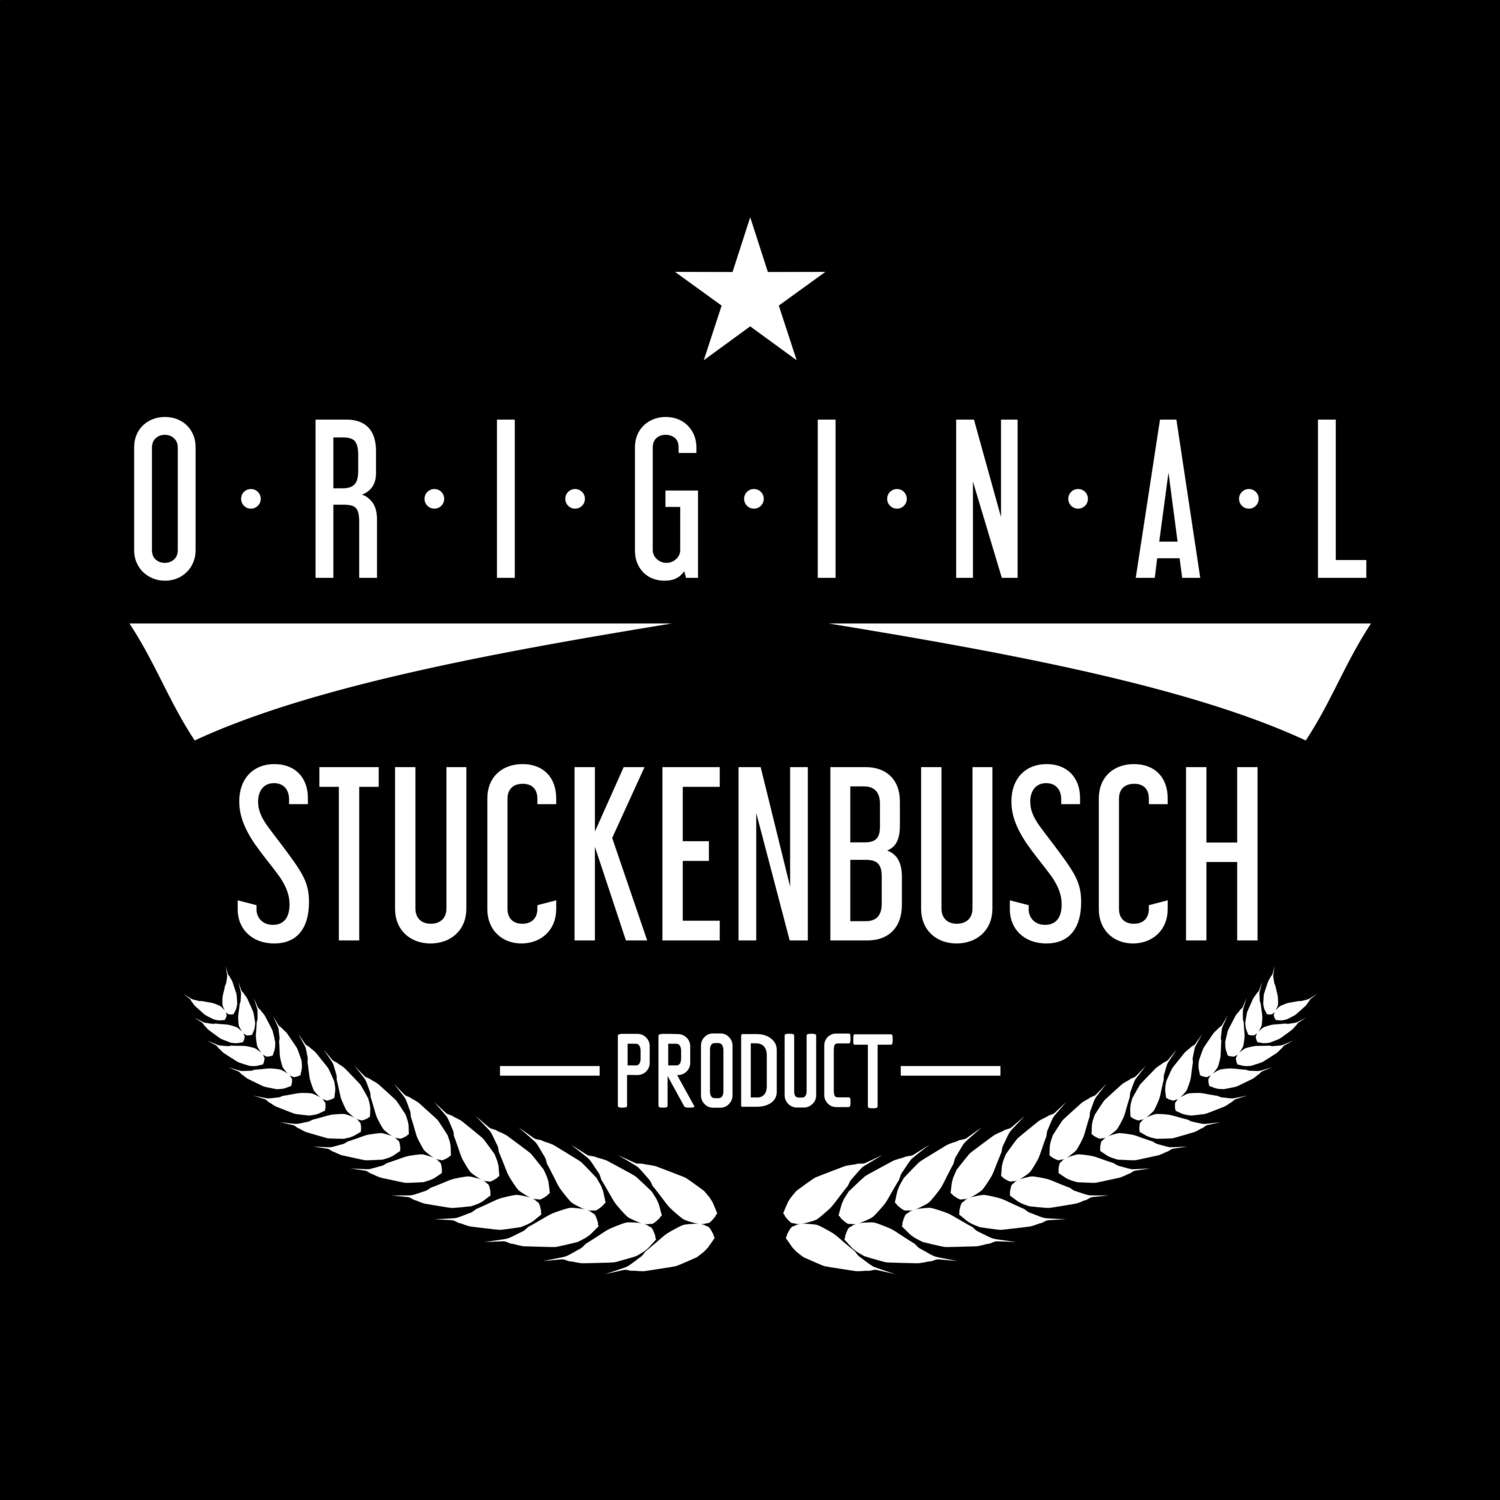 Stuckenbusch T-Shirt »Original Product«